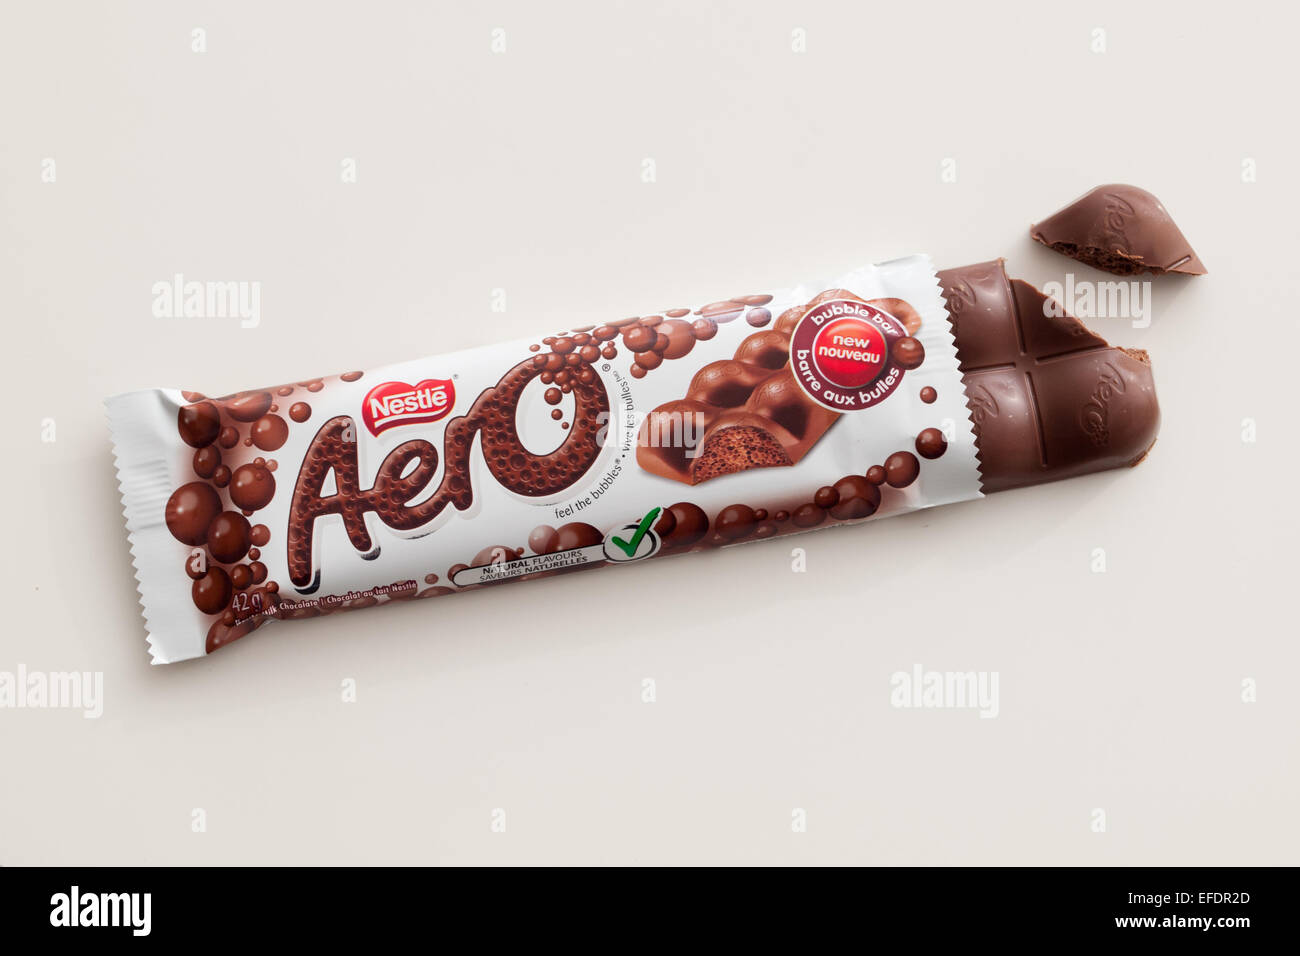 Une barre de chocolat Aero, produit par Nestlé. Emballage canadien illustré. Banque D'Images